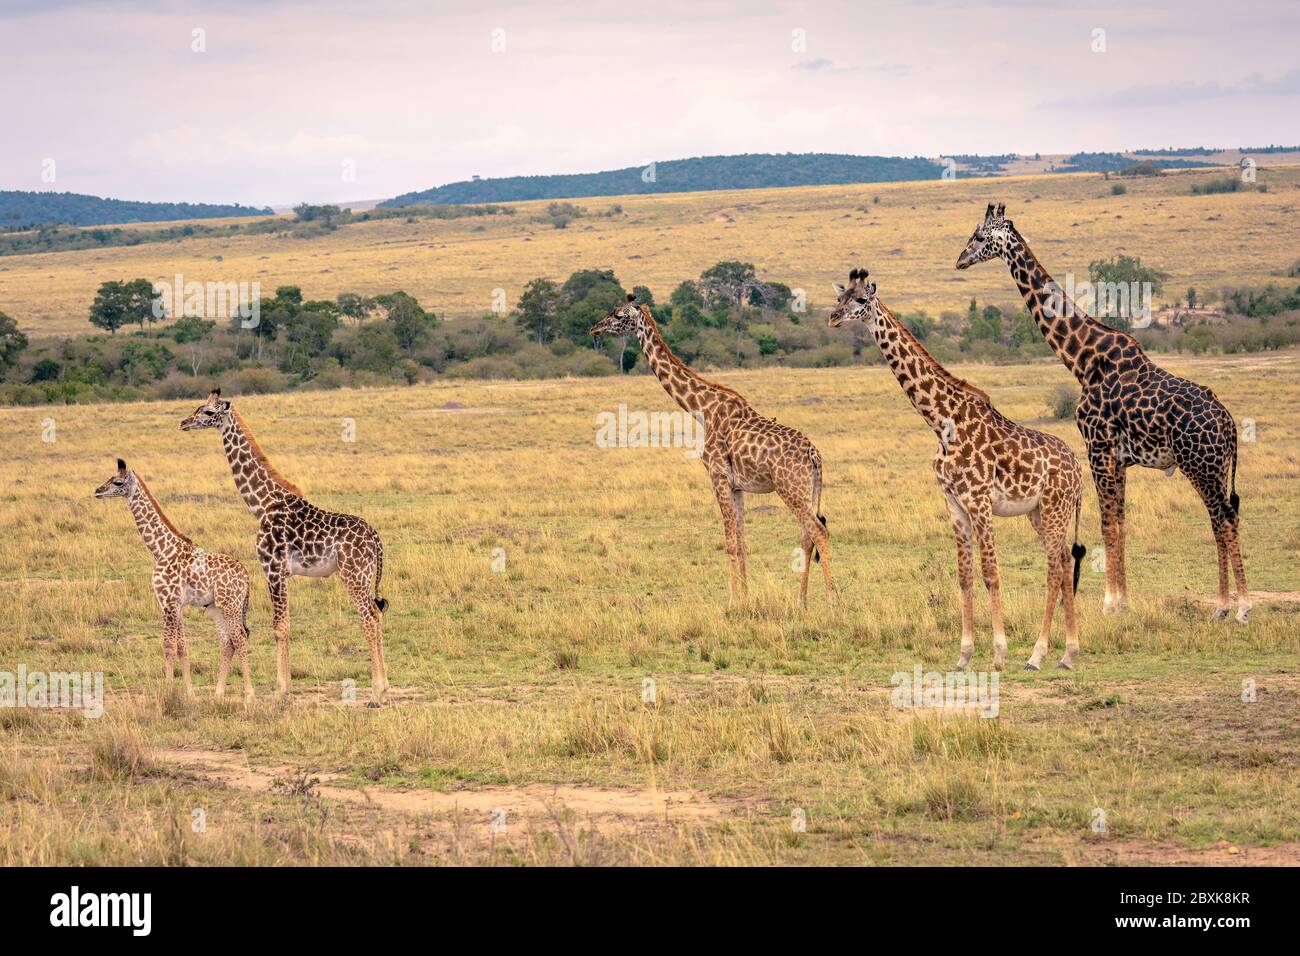 Eine Giraffenfamilie mit fünf Mitgliedern, darunter junge Kälber, die auf der Savanne stehen. Stockfoto